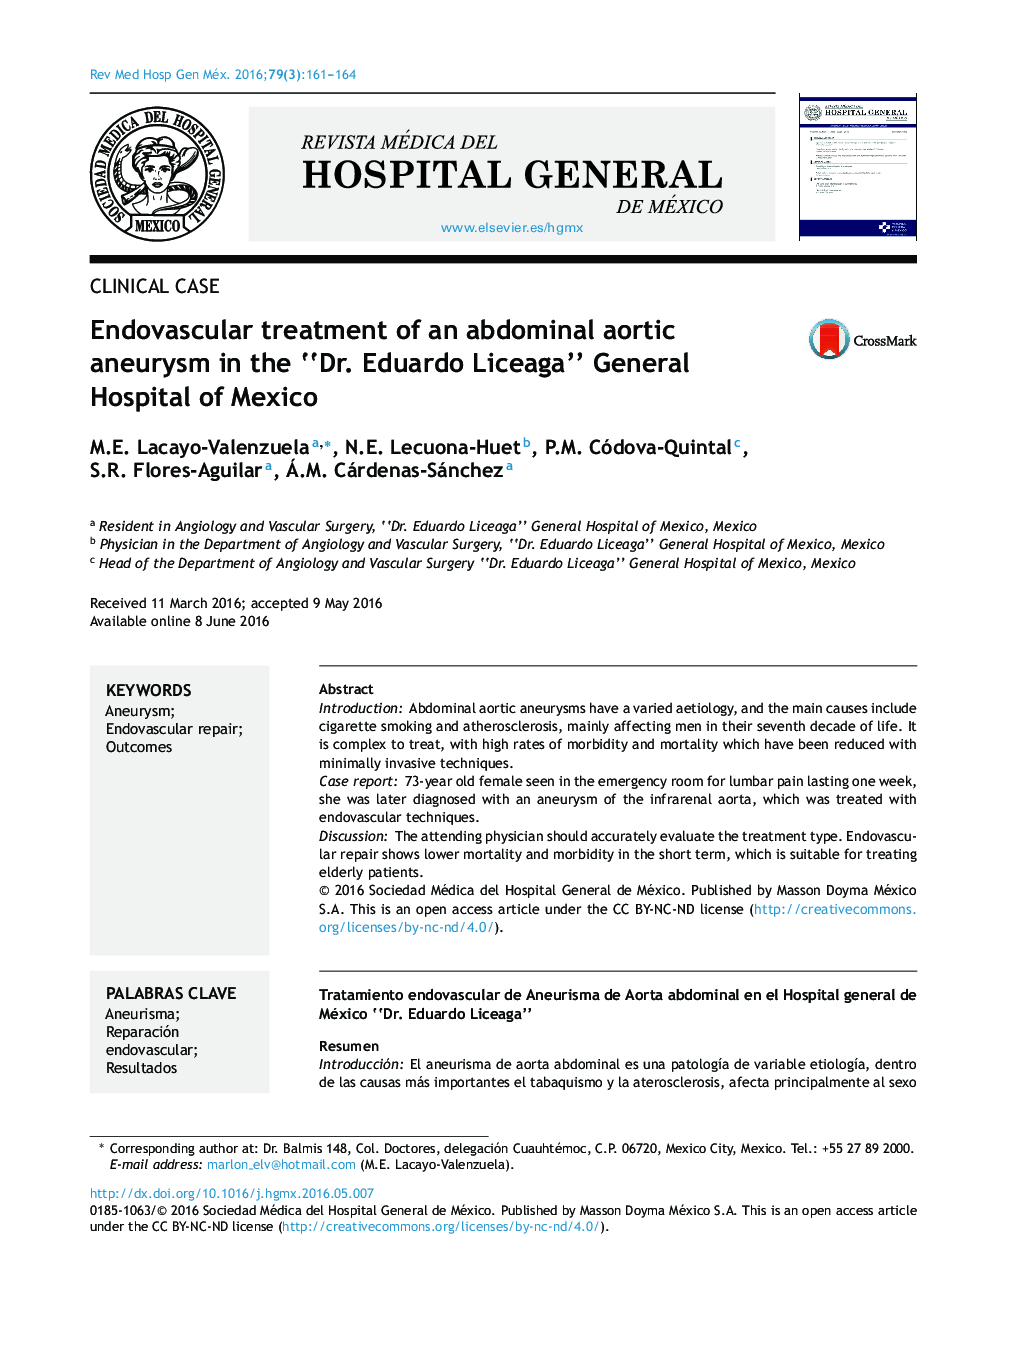 درمان آندوسکوپی آنوریسم آئورت شکمی در دکتر. ادوارد لیساگاا ؟؟ بیمارستان عمومی مکزیک 